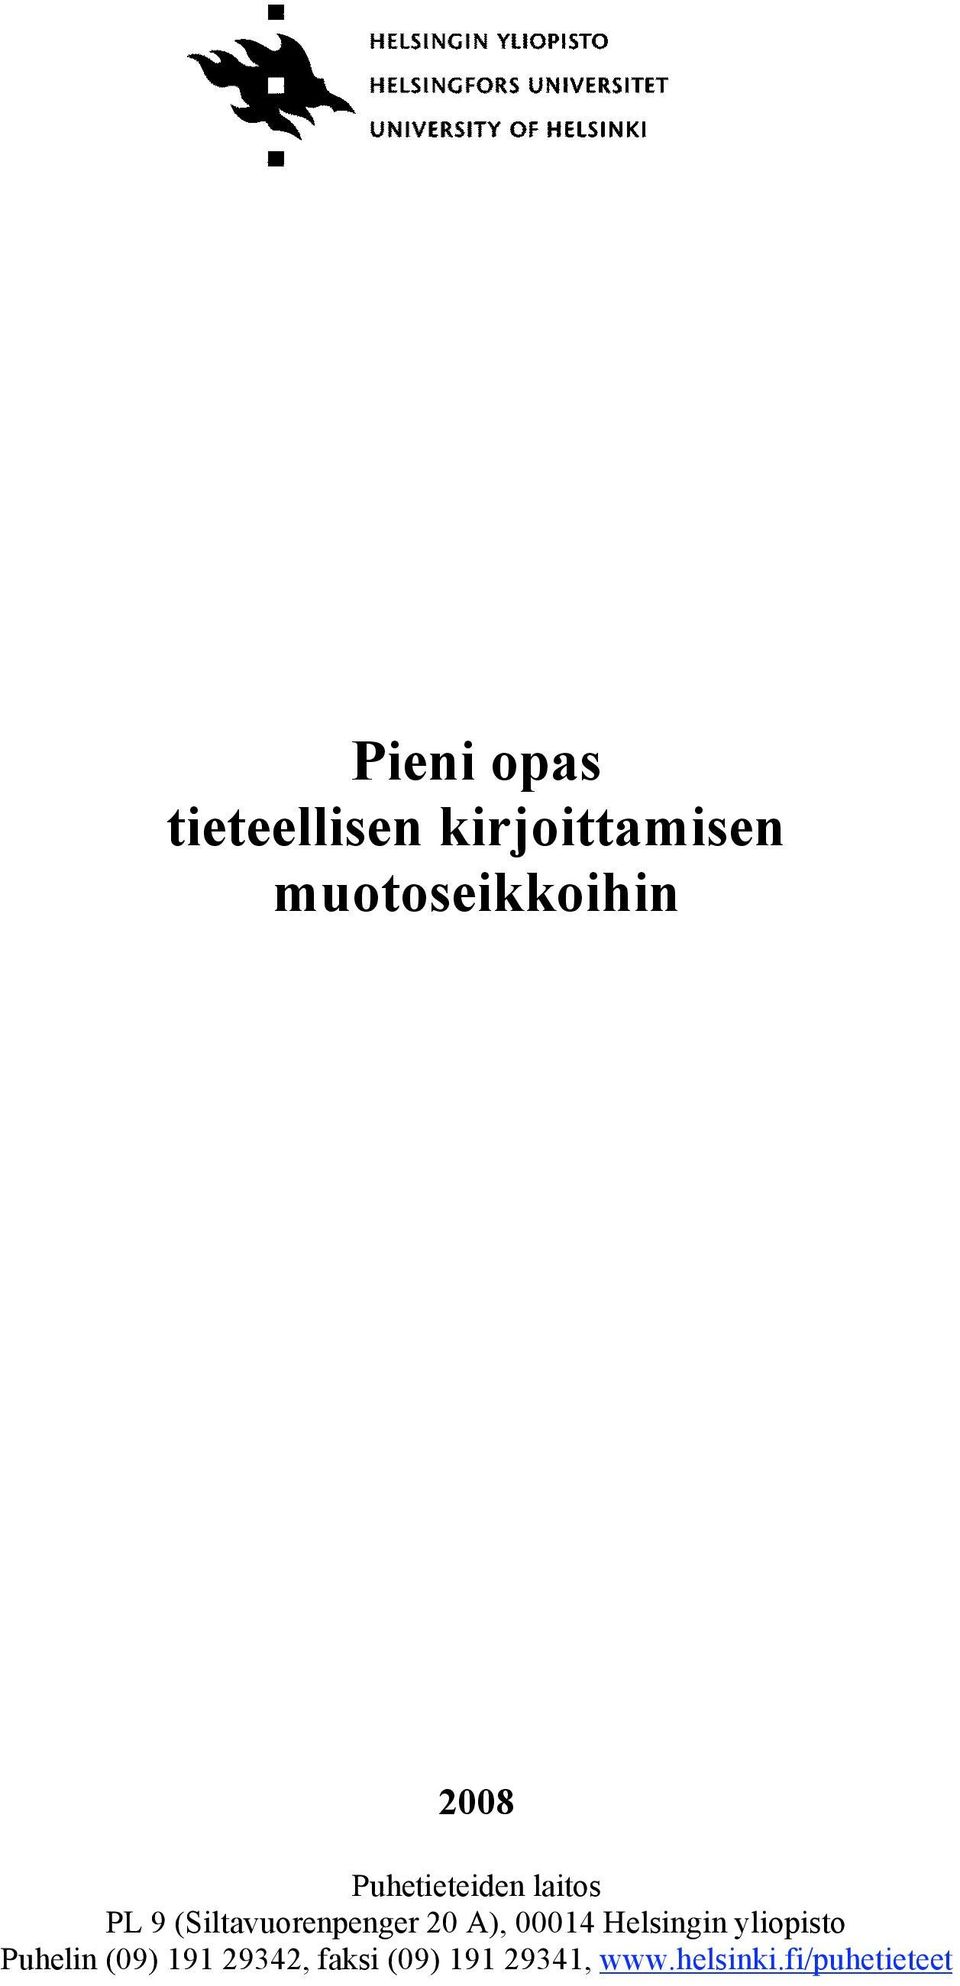 (Siltavuorenpenger 20 A), 00014 Helsingin yliopisto